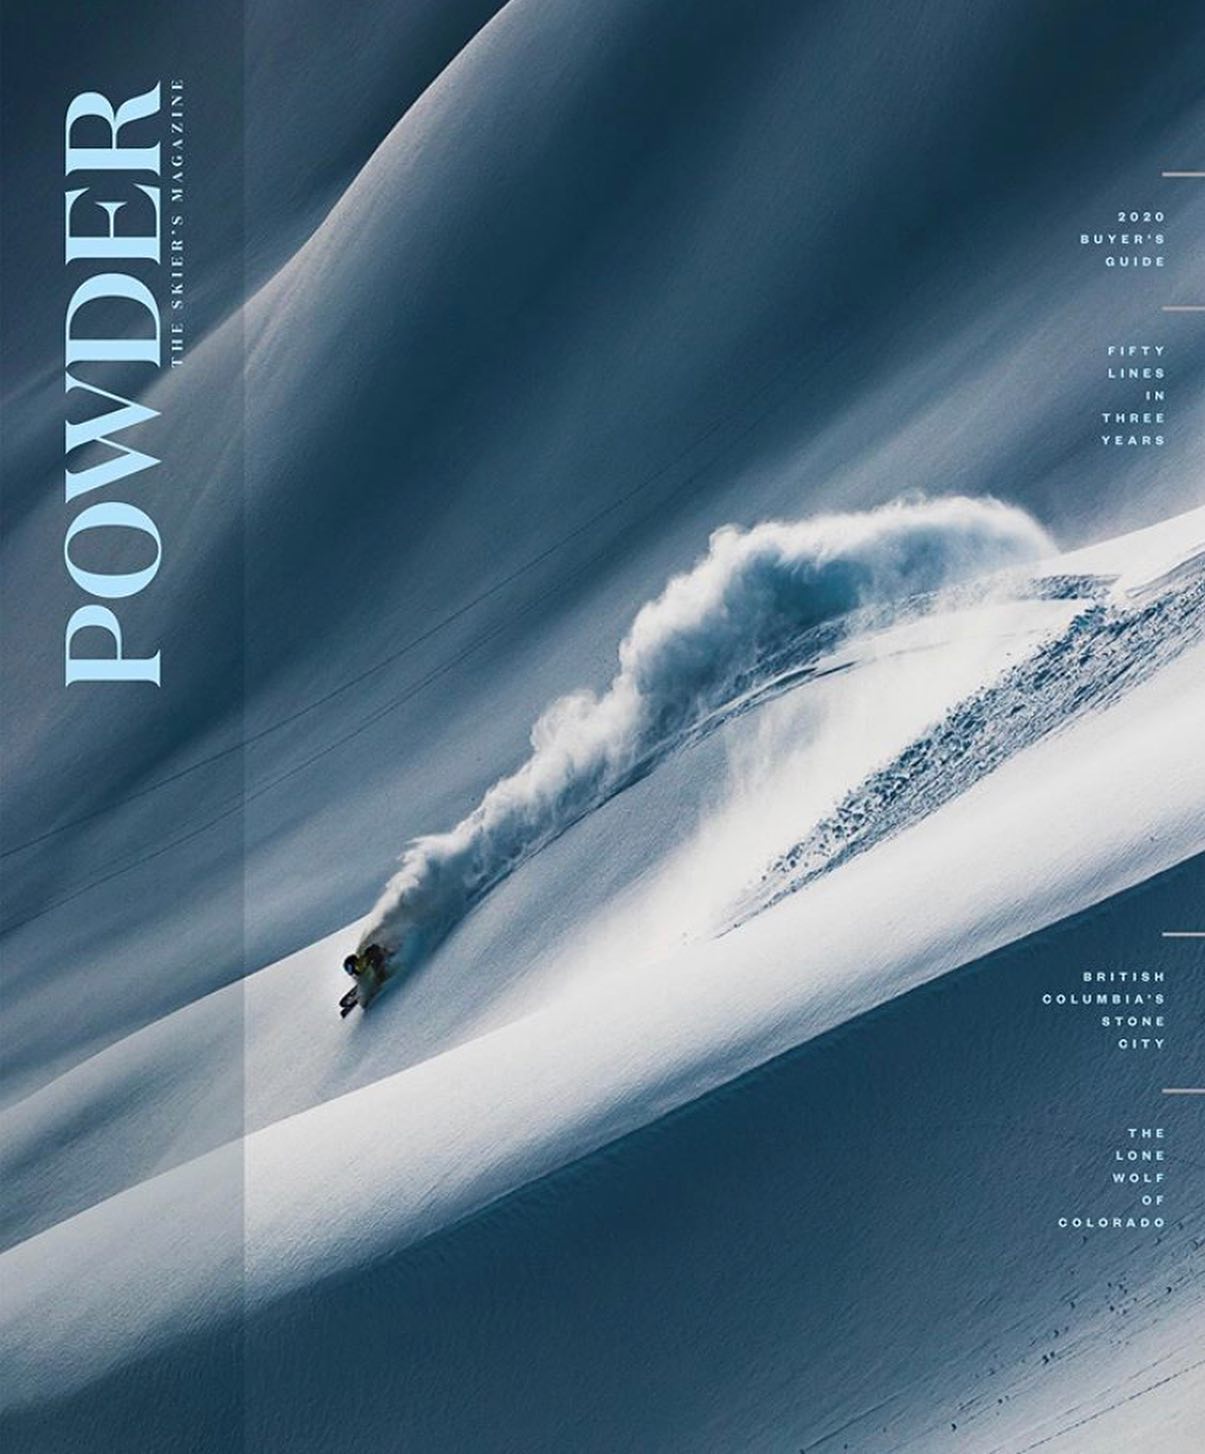 powder, magazine, first issue